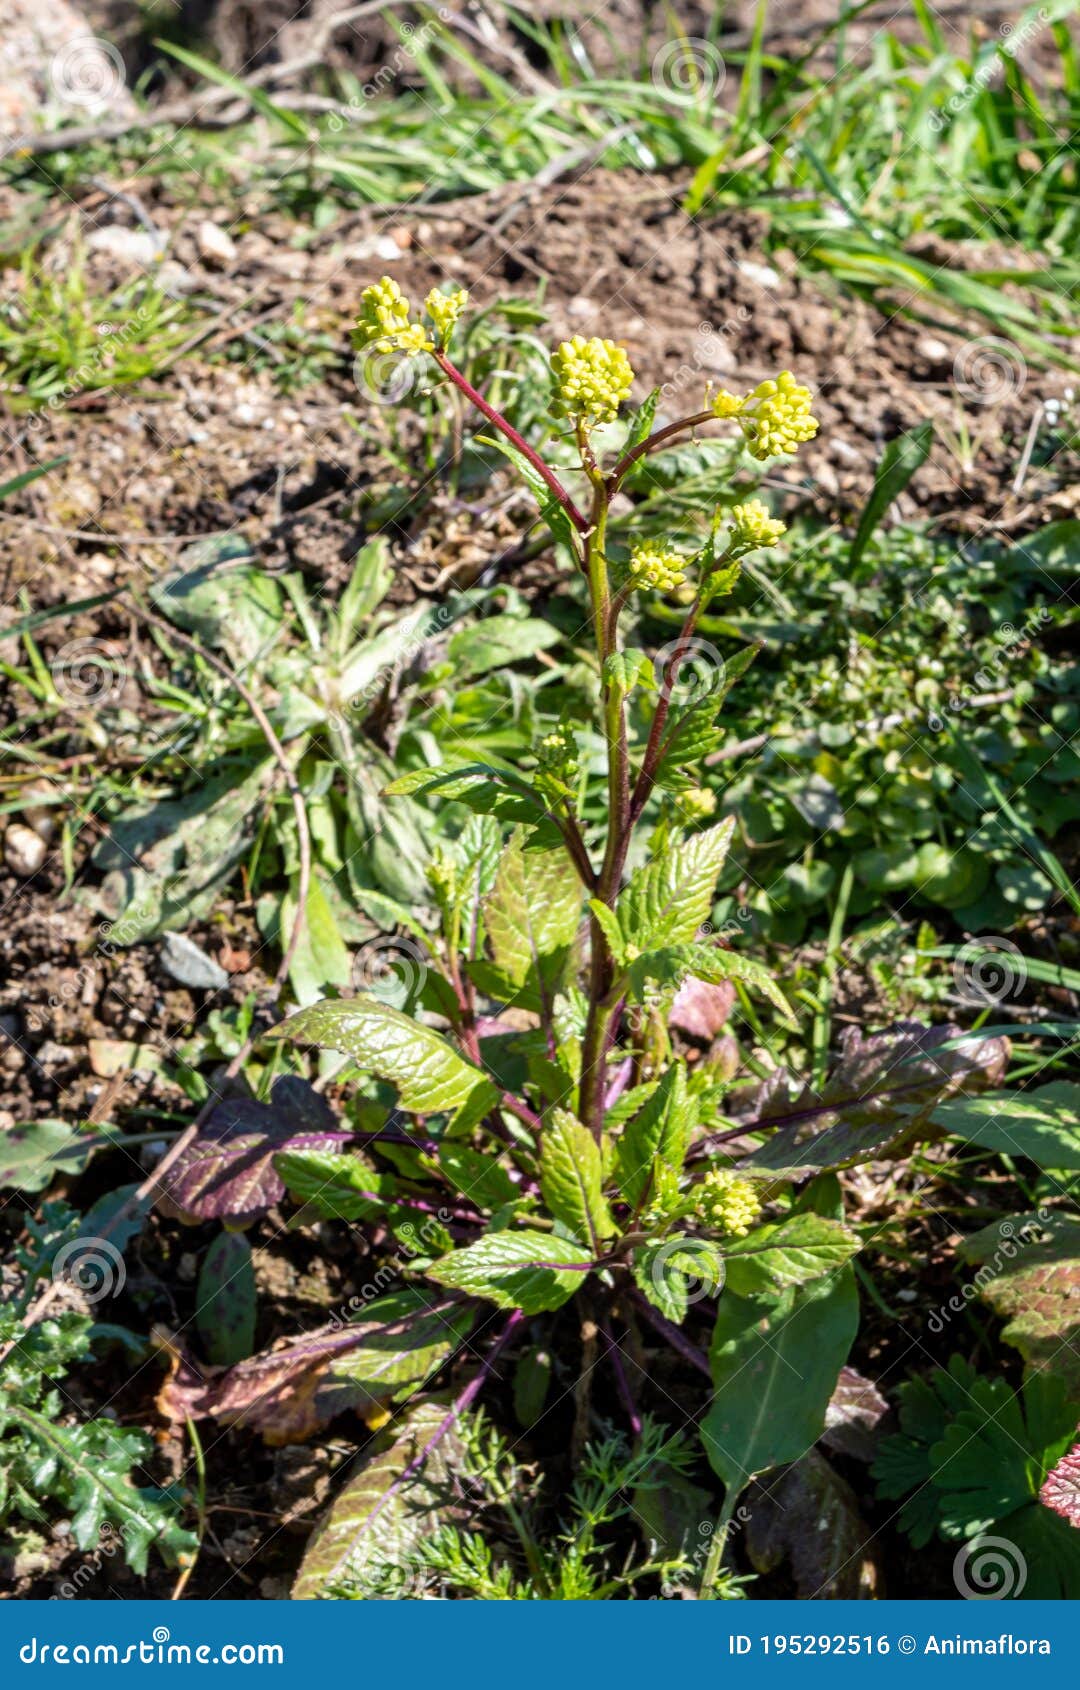 parsnip pastinaca sativa, umbels in spring